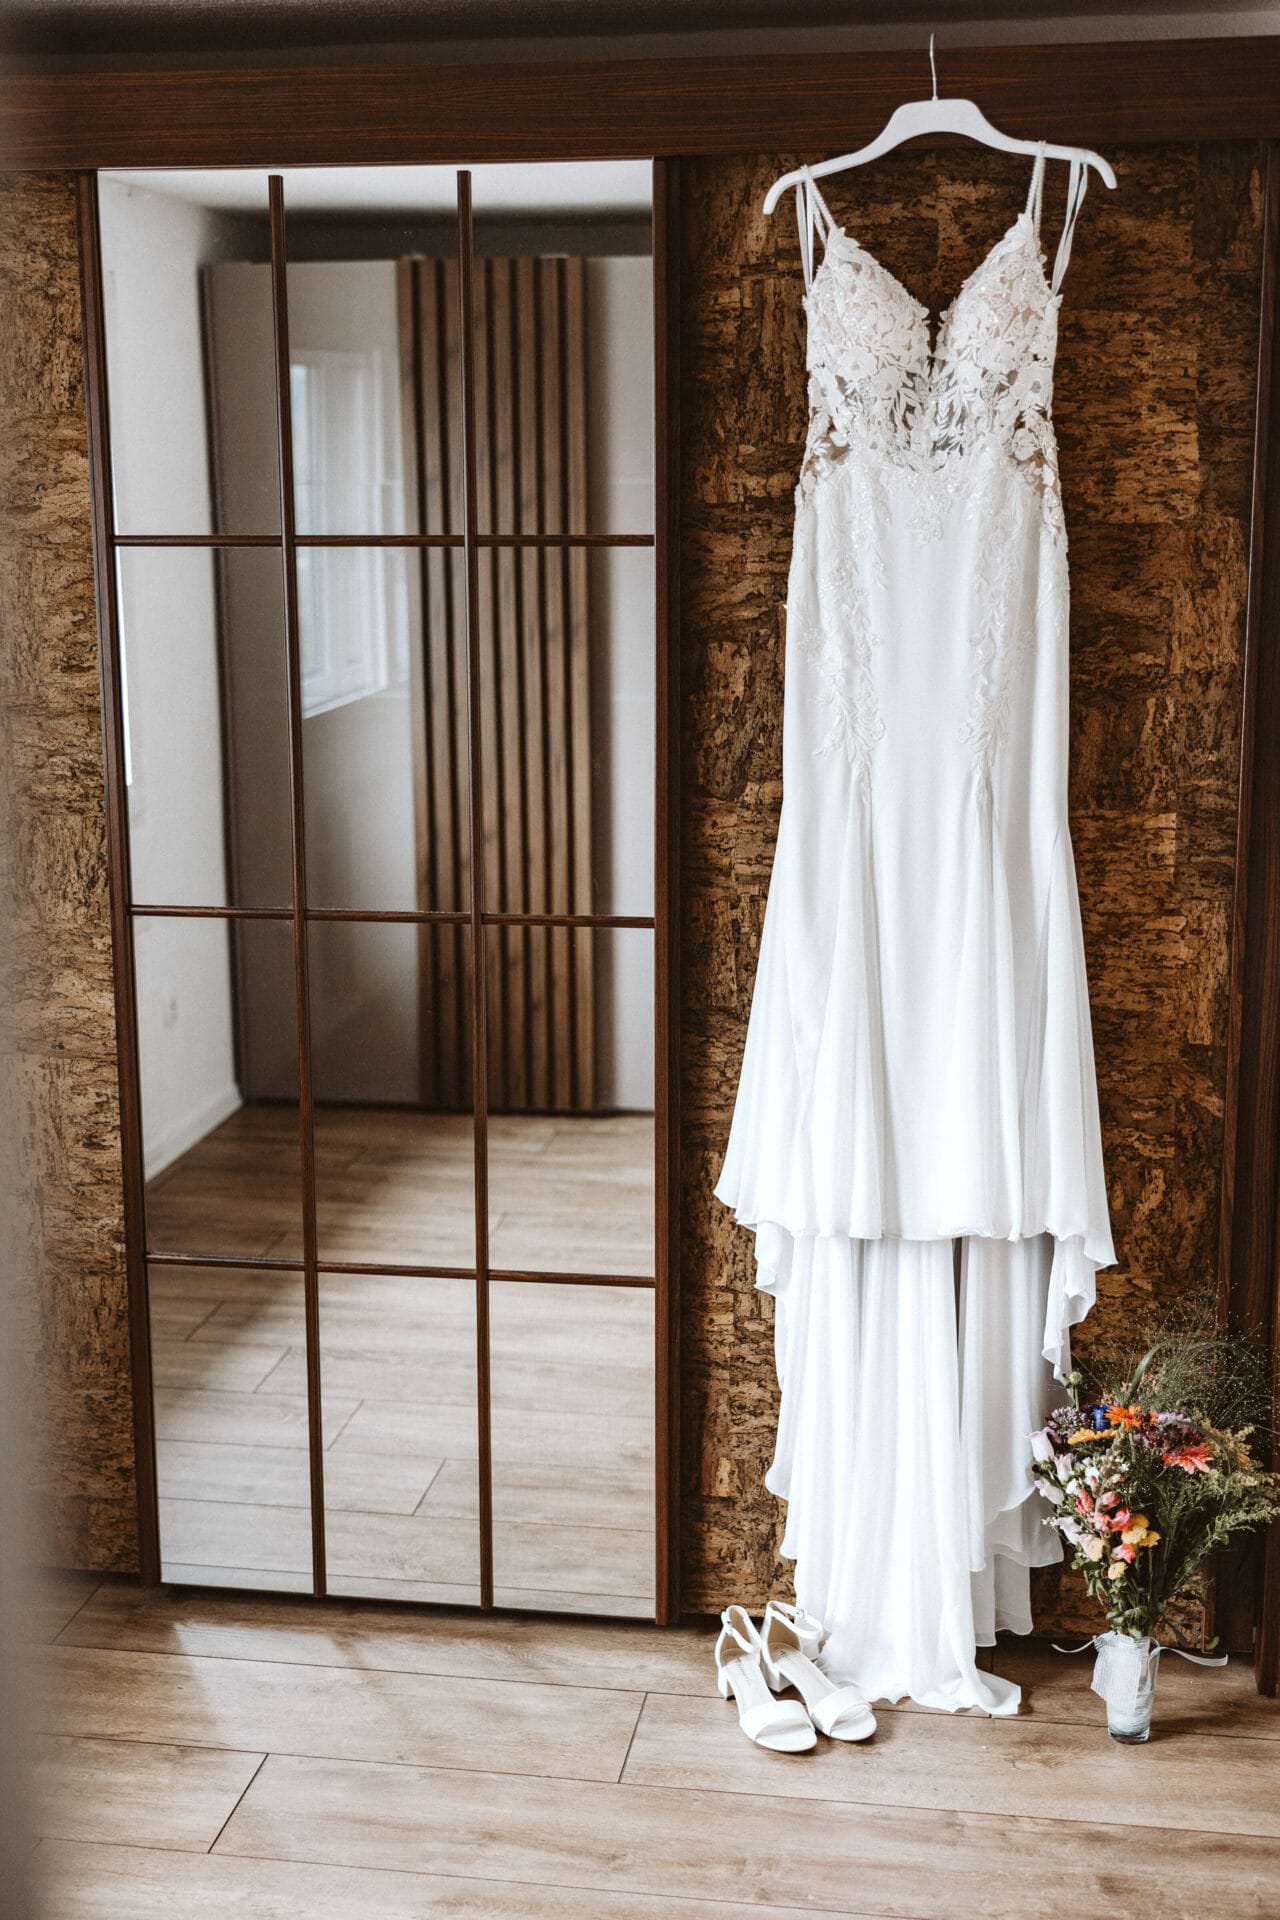 Hochzeitsfotograf Unna Hochzeit Heiraten Hochzeitsfotos - Hochzeitskleid hängt auf einem weißen Kleiderbügel neben einem Spiegel. Unter dem Hochzeitskleid ist ein Blumenstrauß und Schuhe zu sehen